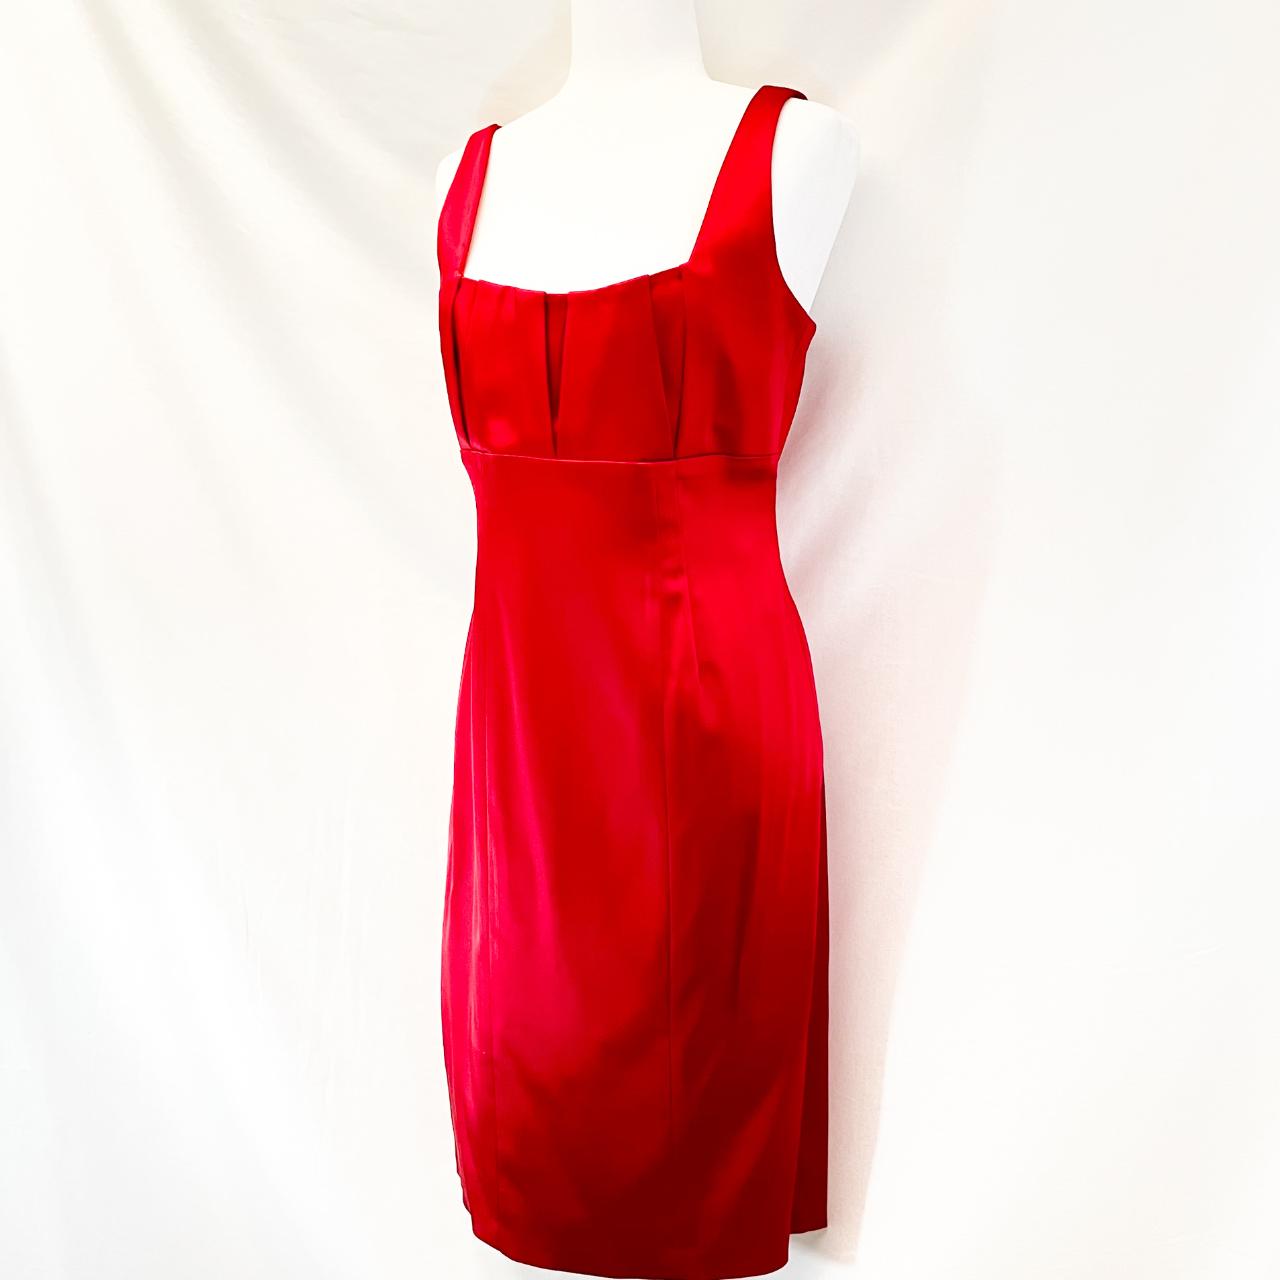 Stunning Calvin Klein red satin gem. Just had this... - Depop